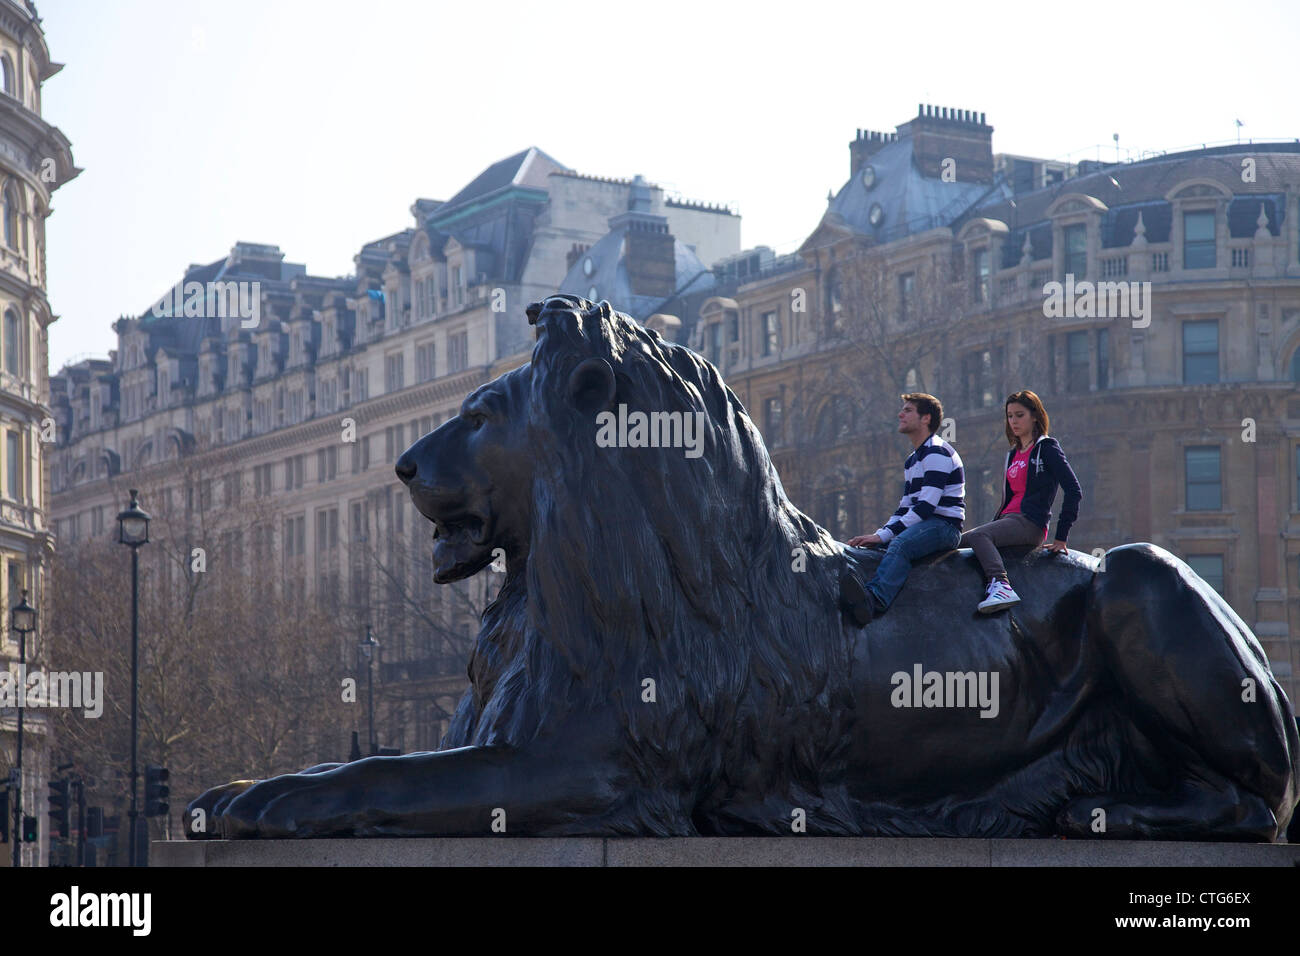 Les jeunes à l'arrière d'un lion de bronze statue, Trafagar Square, London, England, UK, Royaume-Uni, Iles britanniques, GO Banque D'Images